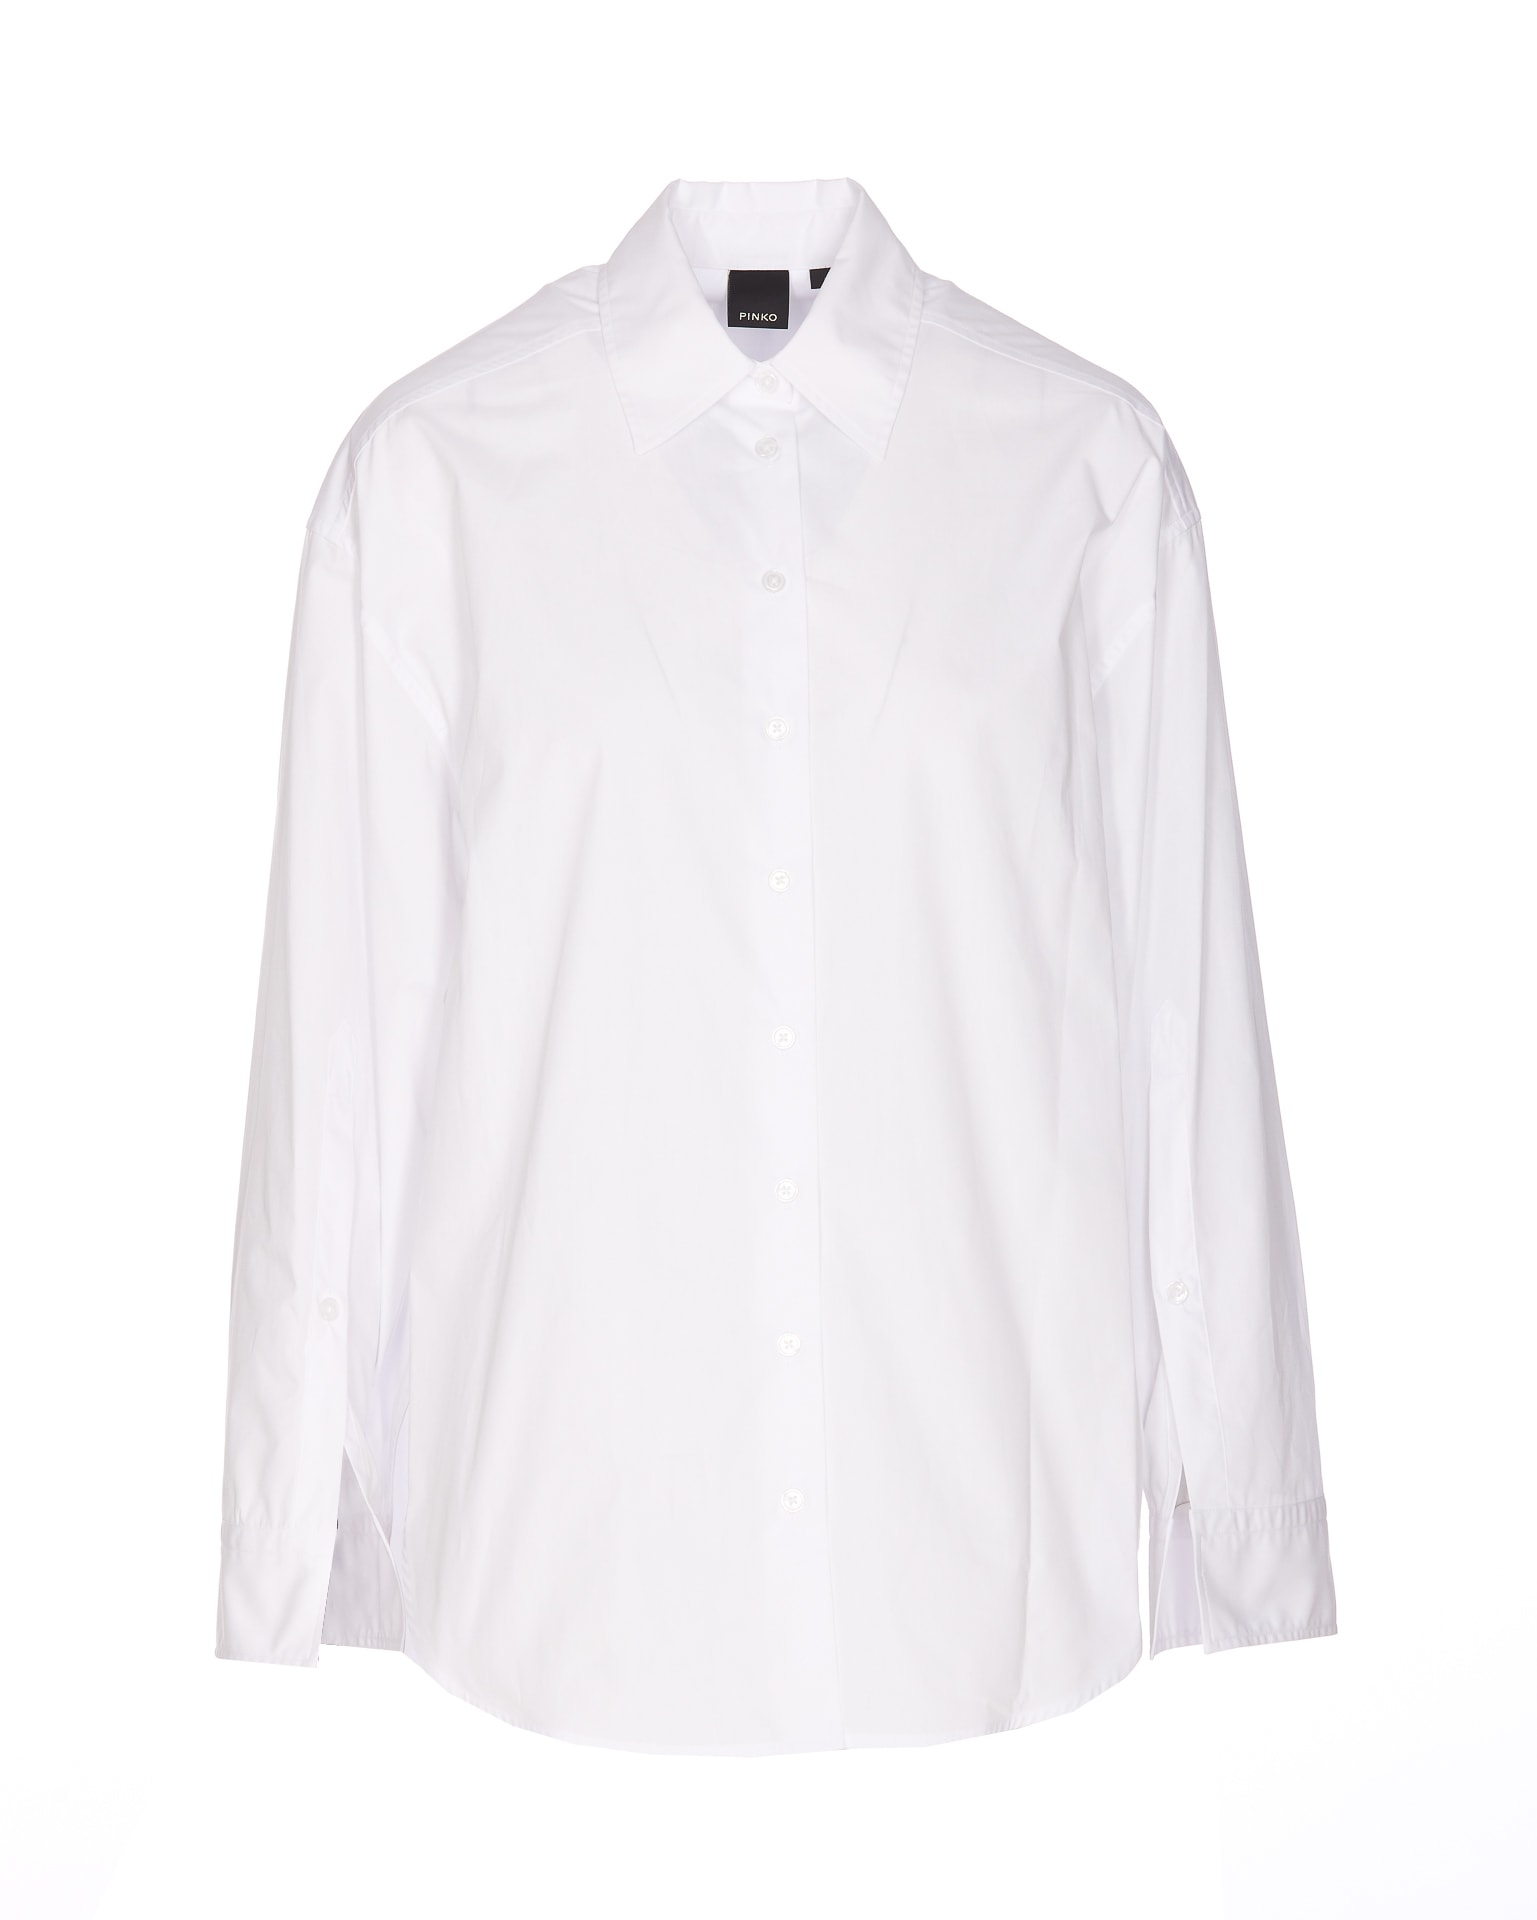 Pinko Eden Shirt In White